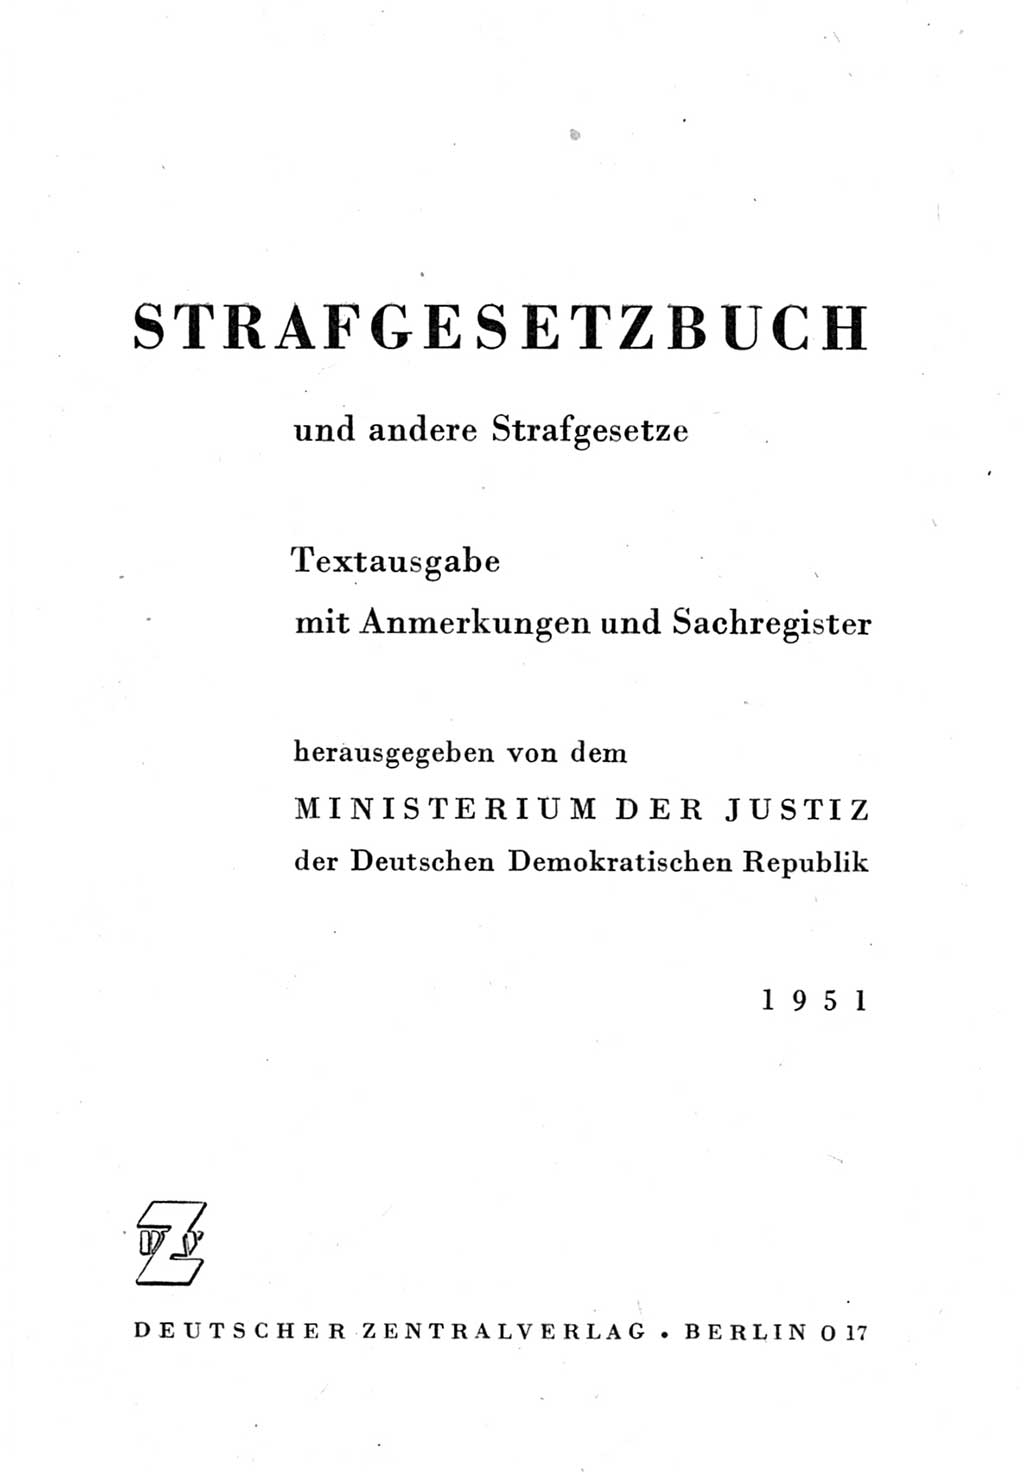 Strafgesetzbuch (StGB) und andere Strafgesetze [Deutsche Demokratische Republik (DDR)] 1951, Seite 3 (StGB Strafges. DDR 1951, S. 3)